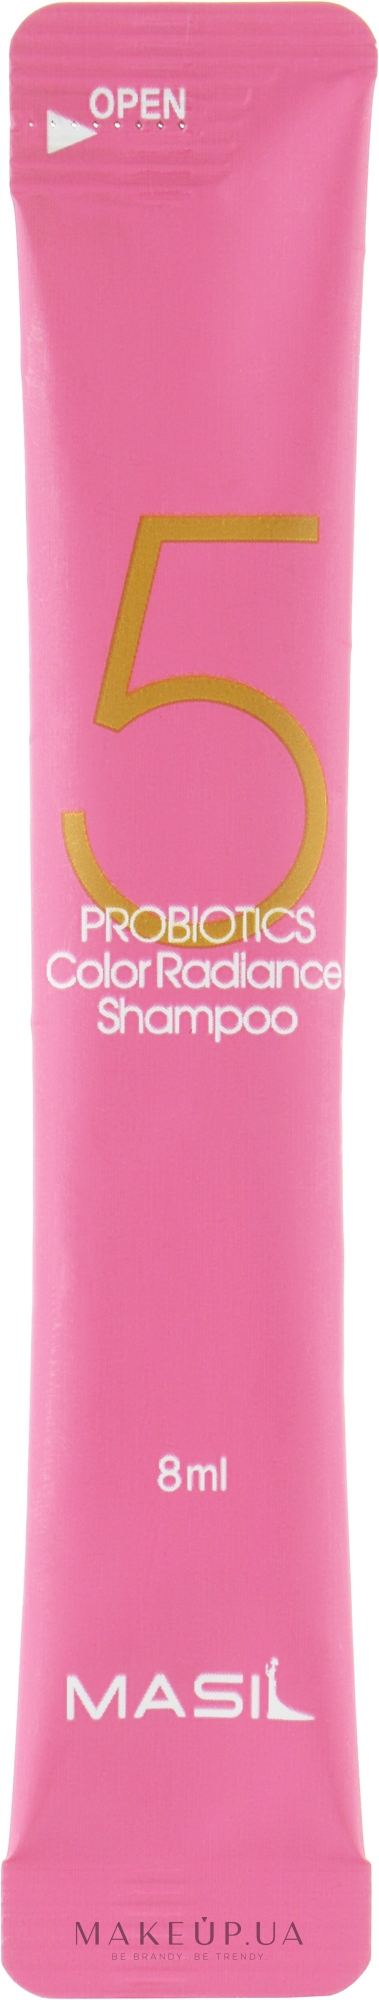 Шампунь з пробіотиками для захисту кольору - Masil 5 Probiotics Color Radiance Shampoo (пробник) — фото 8ml